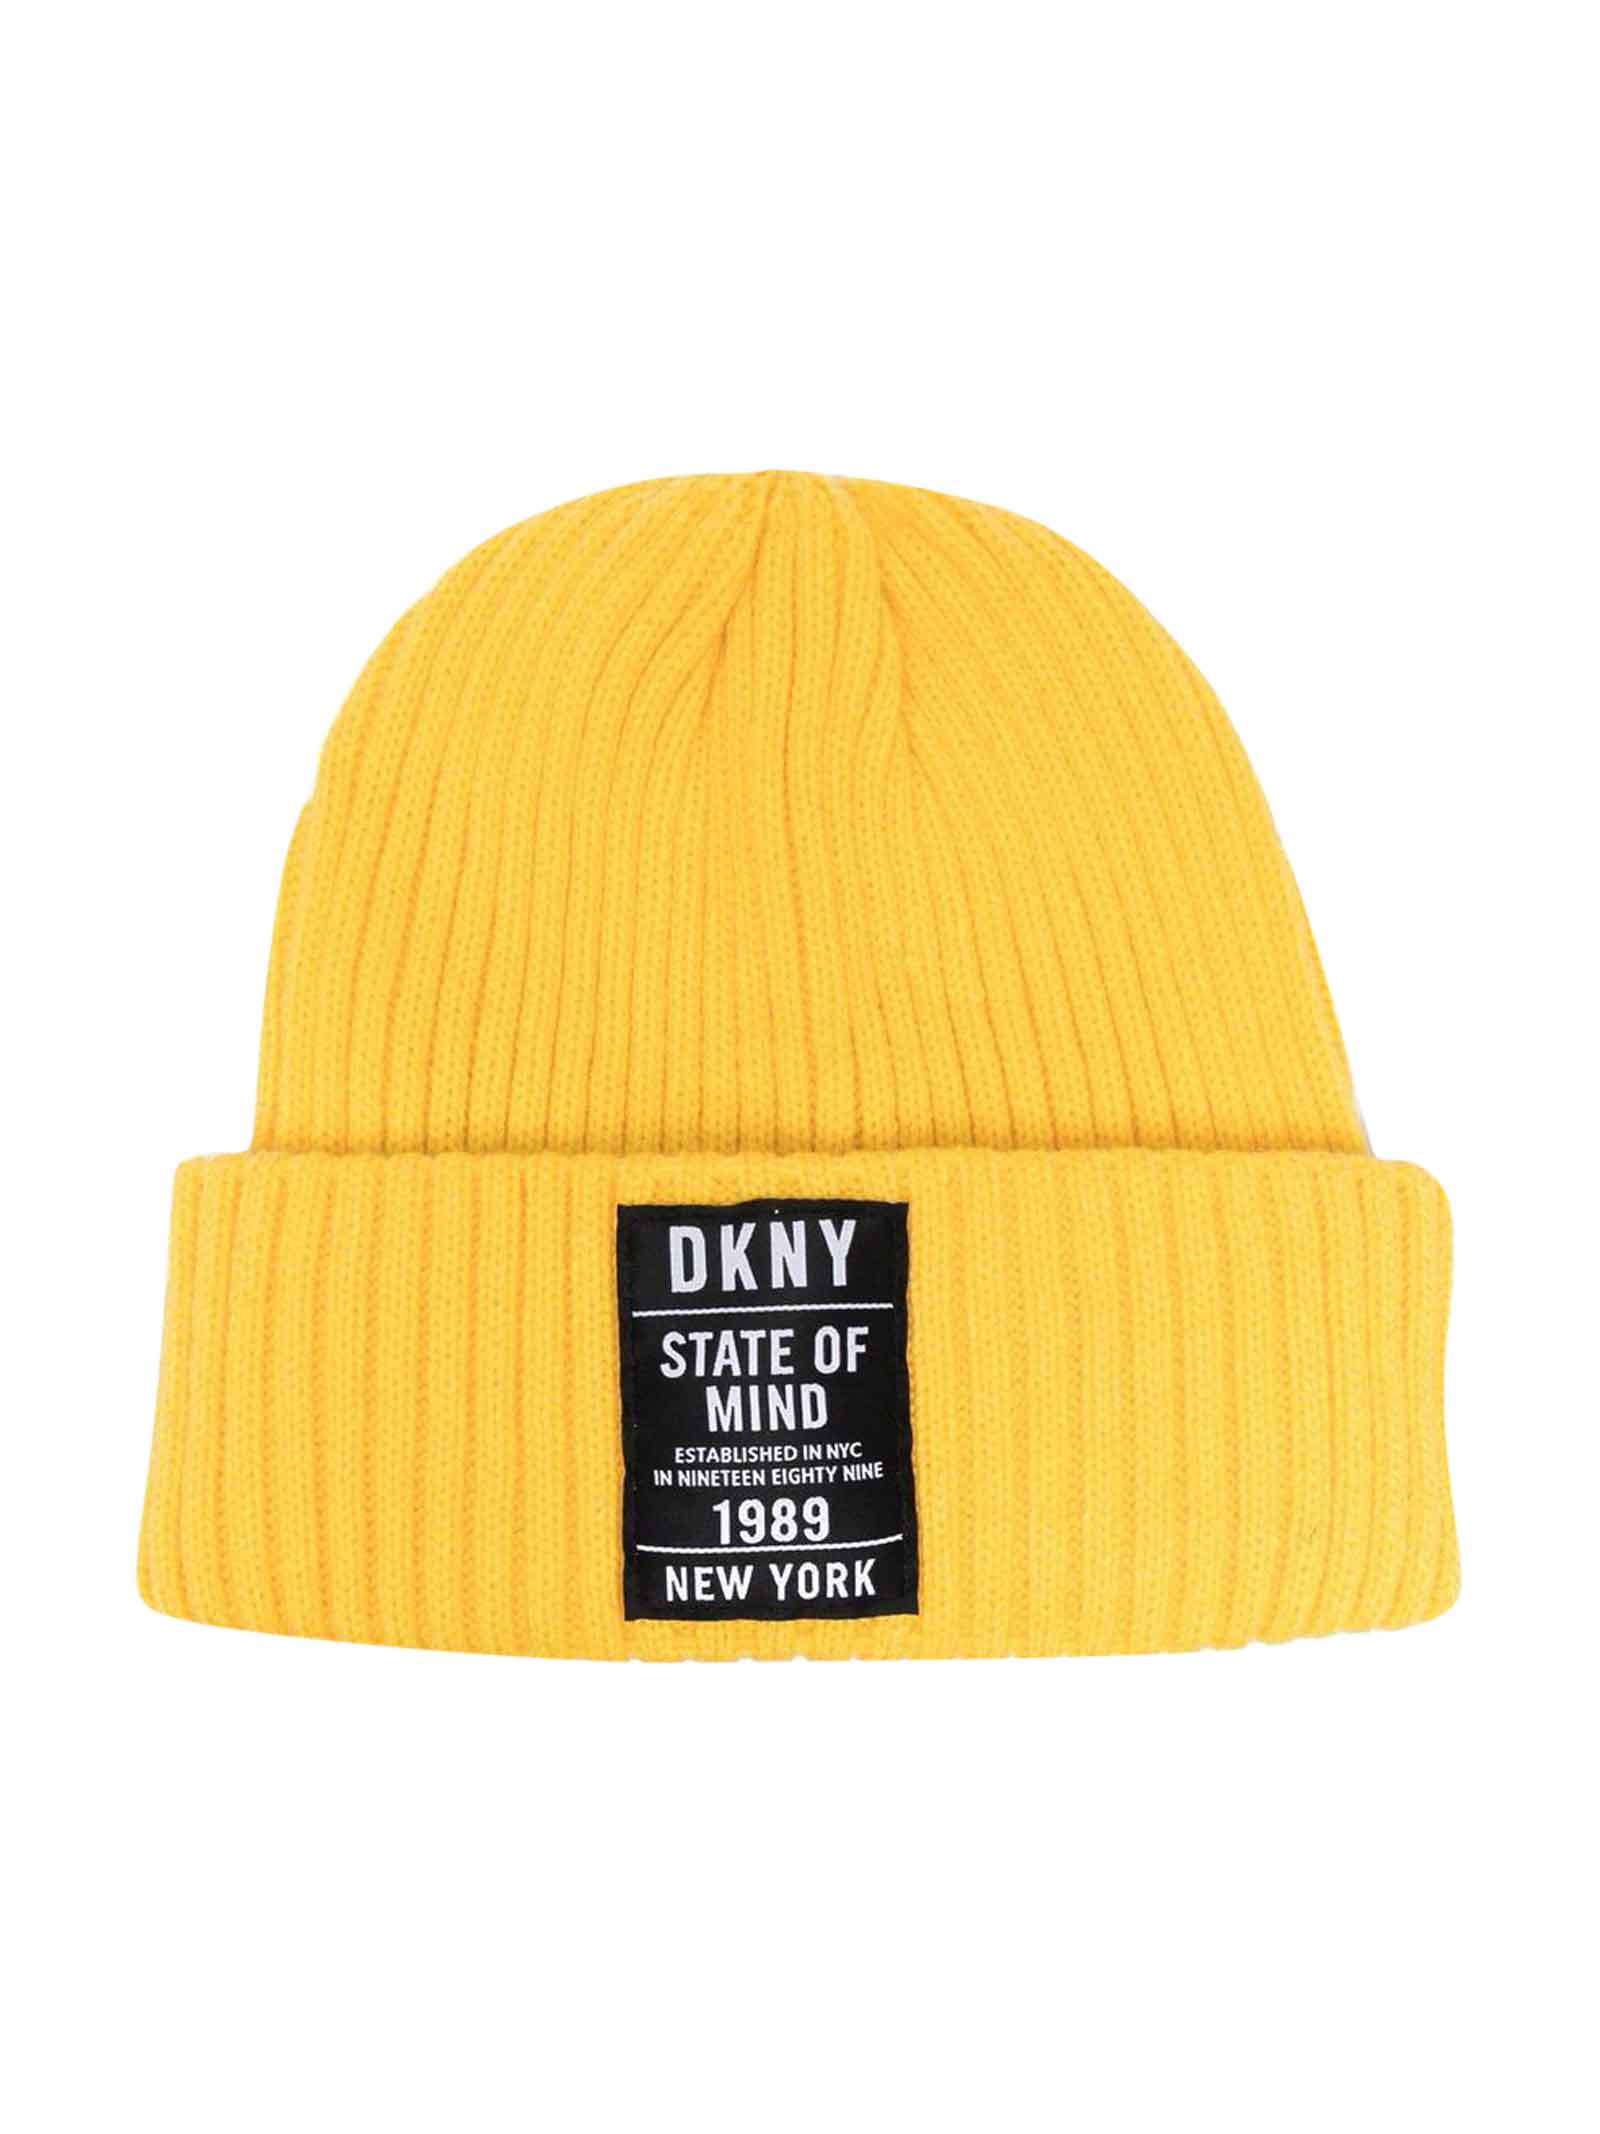 DKNY Ribbed Yellow Cap